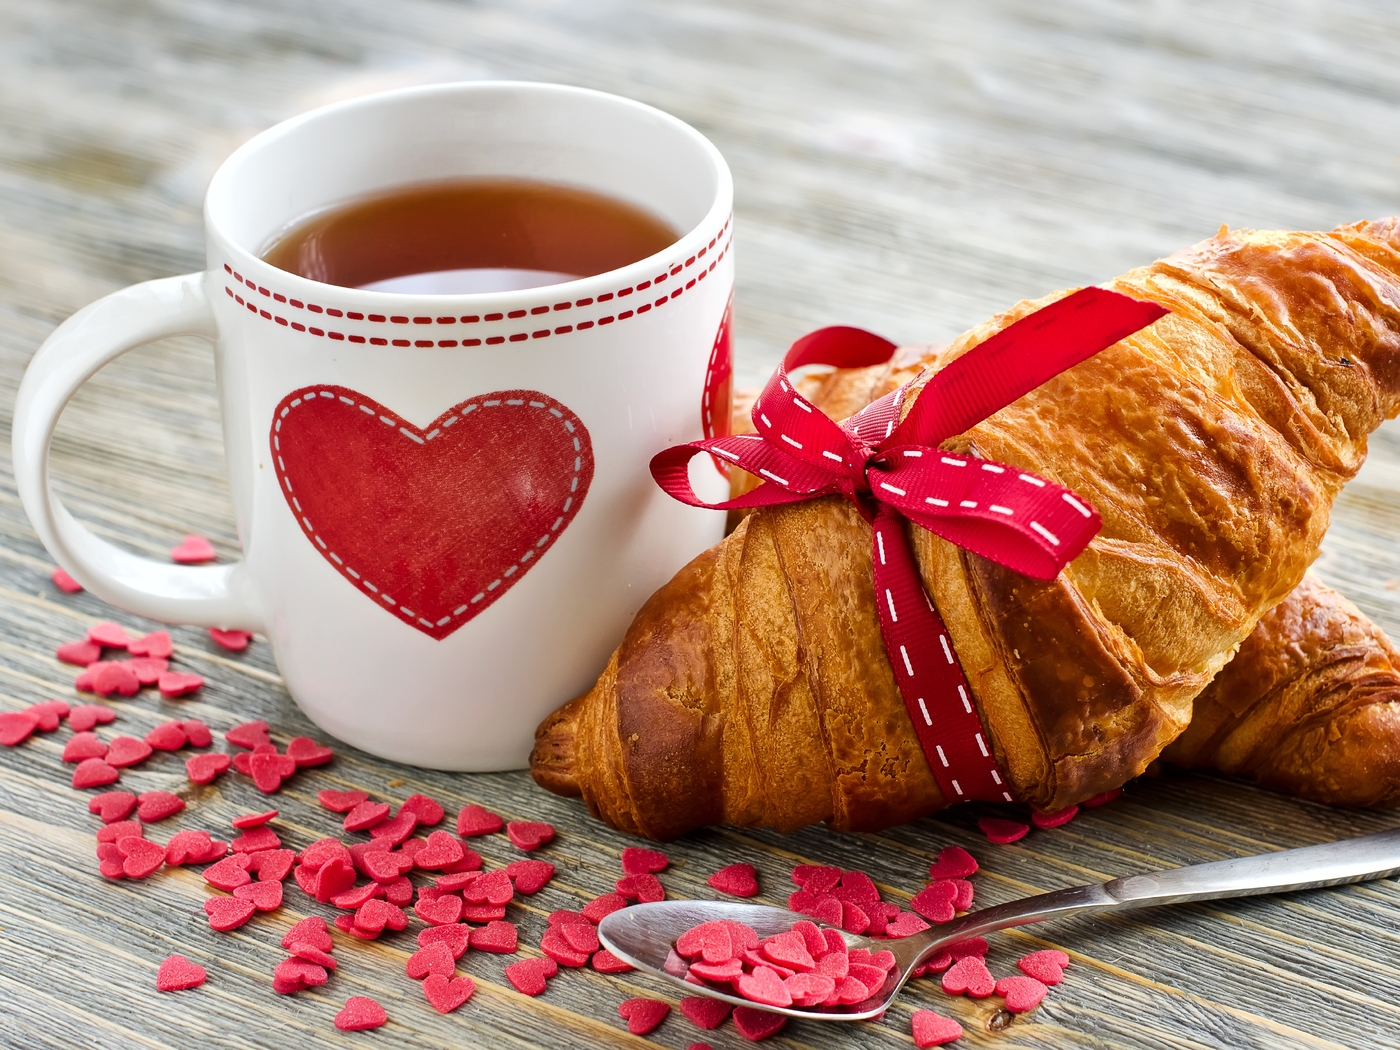 Картинка: Круассан, выпечка, кружка, чашка, чай, сердце, сердечки, любовь, завтрак